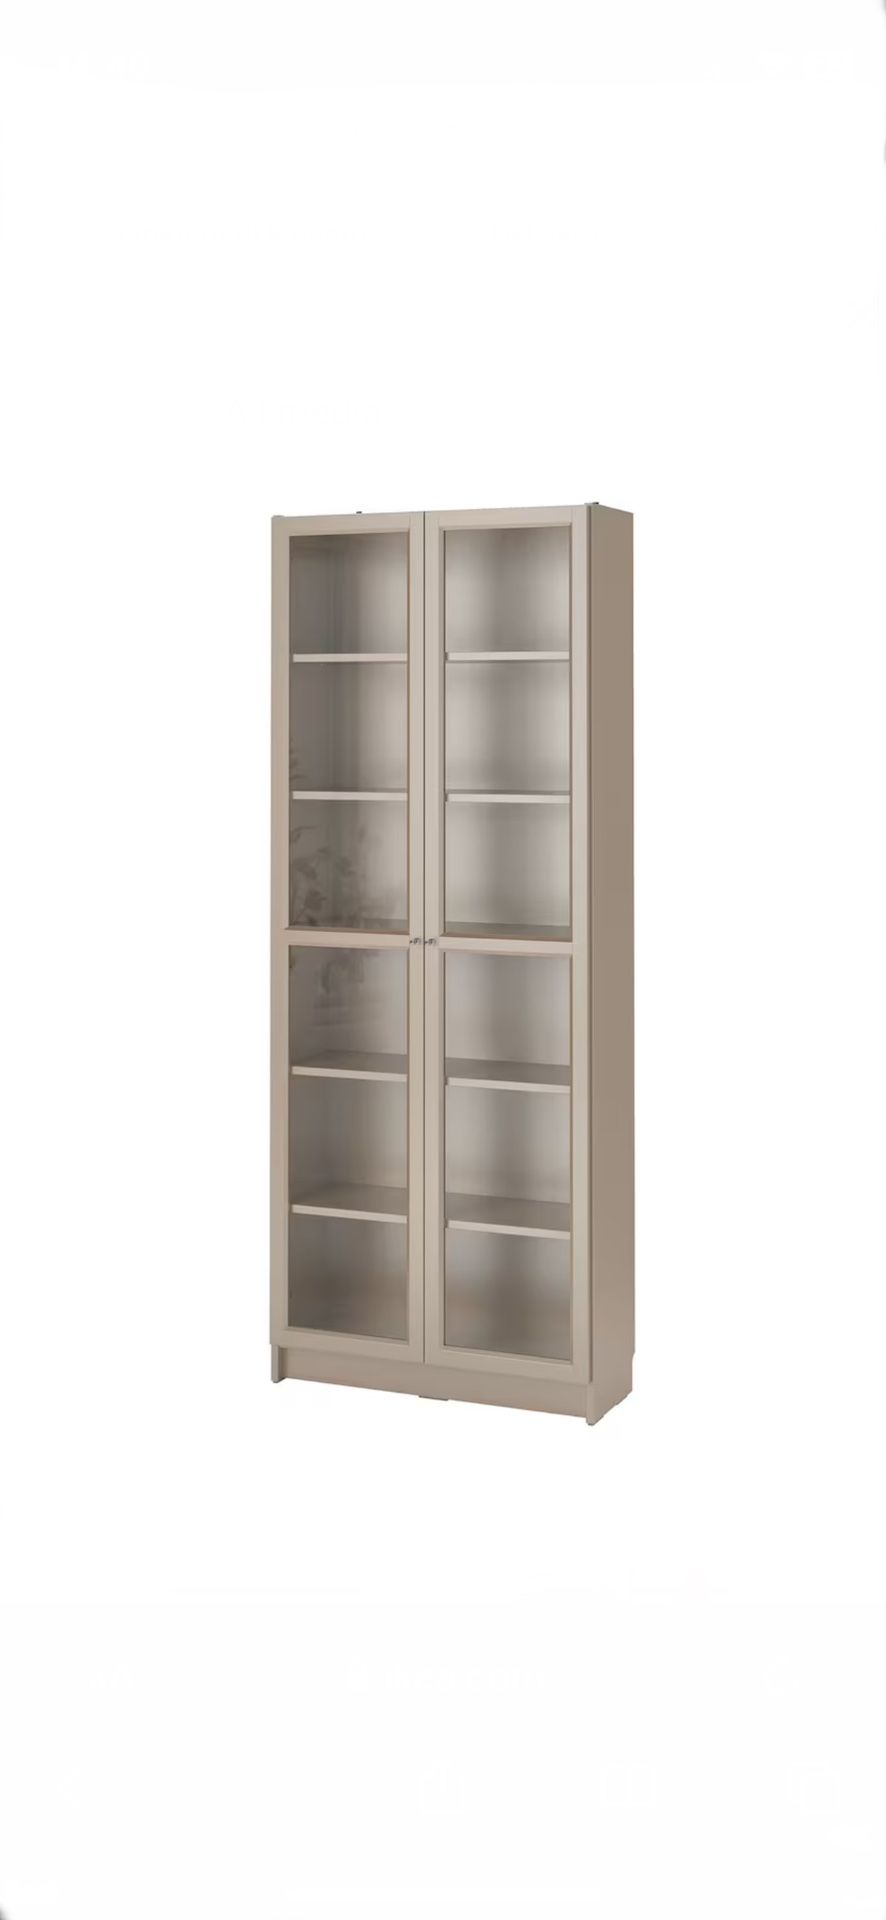 IKEA Glass Door Bookshelf